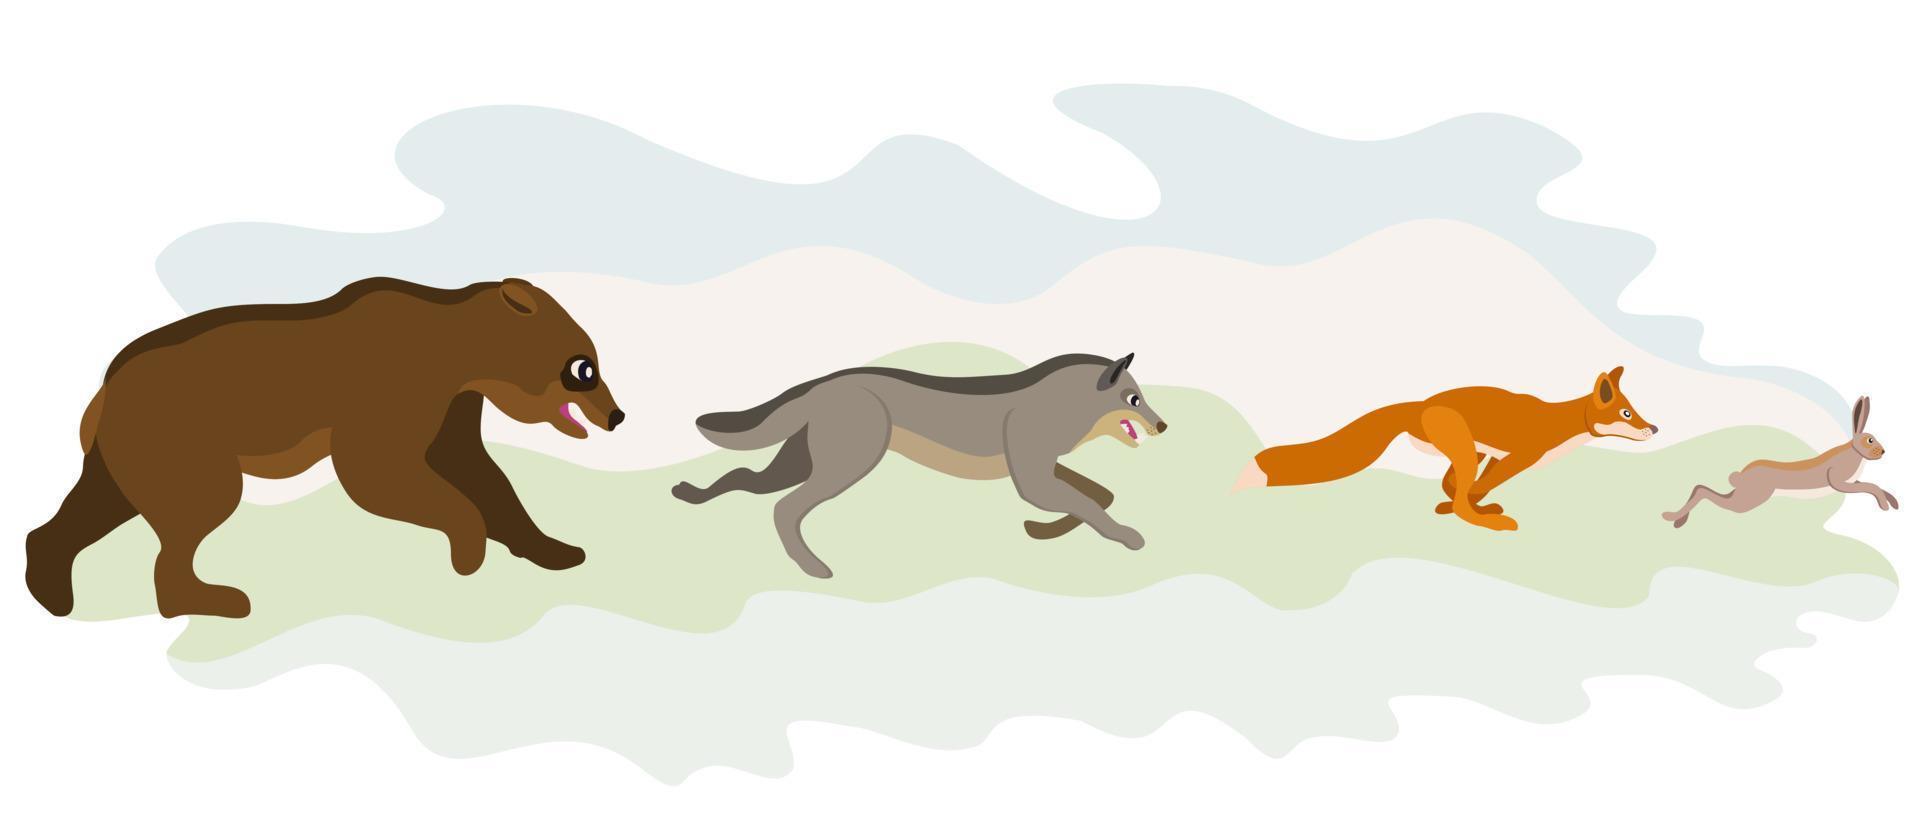 Tiere laufen hintereinander her. Hase, Fuchs, Wolf, Bär. vektor isolierte illustration.